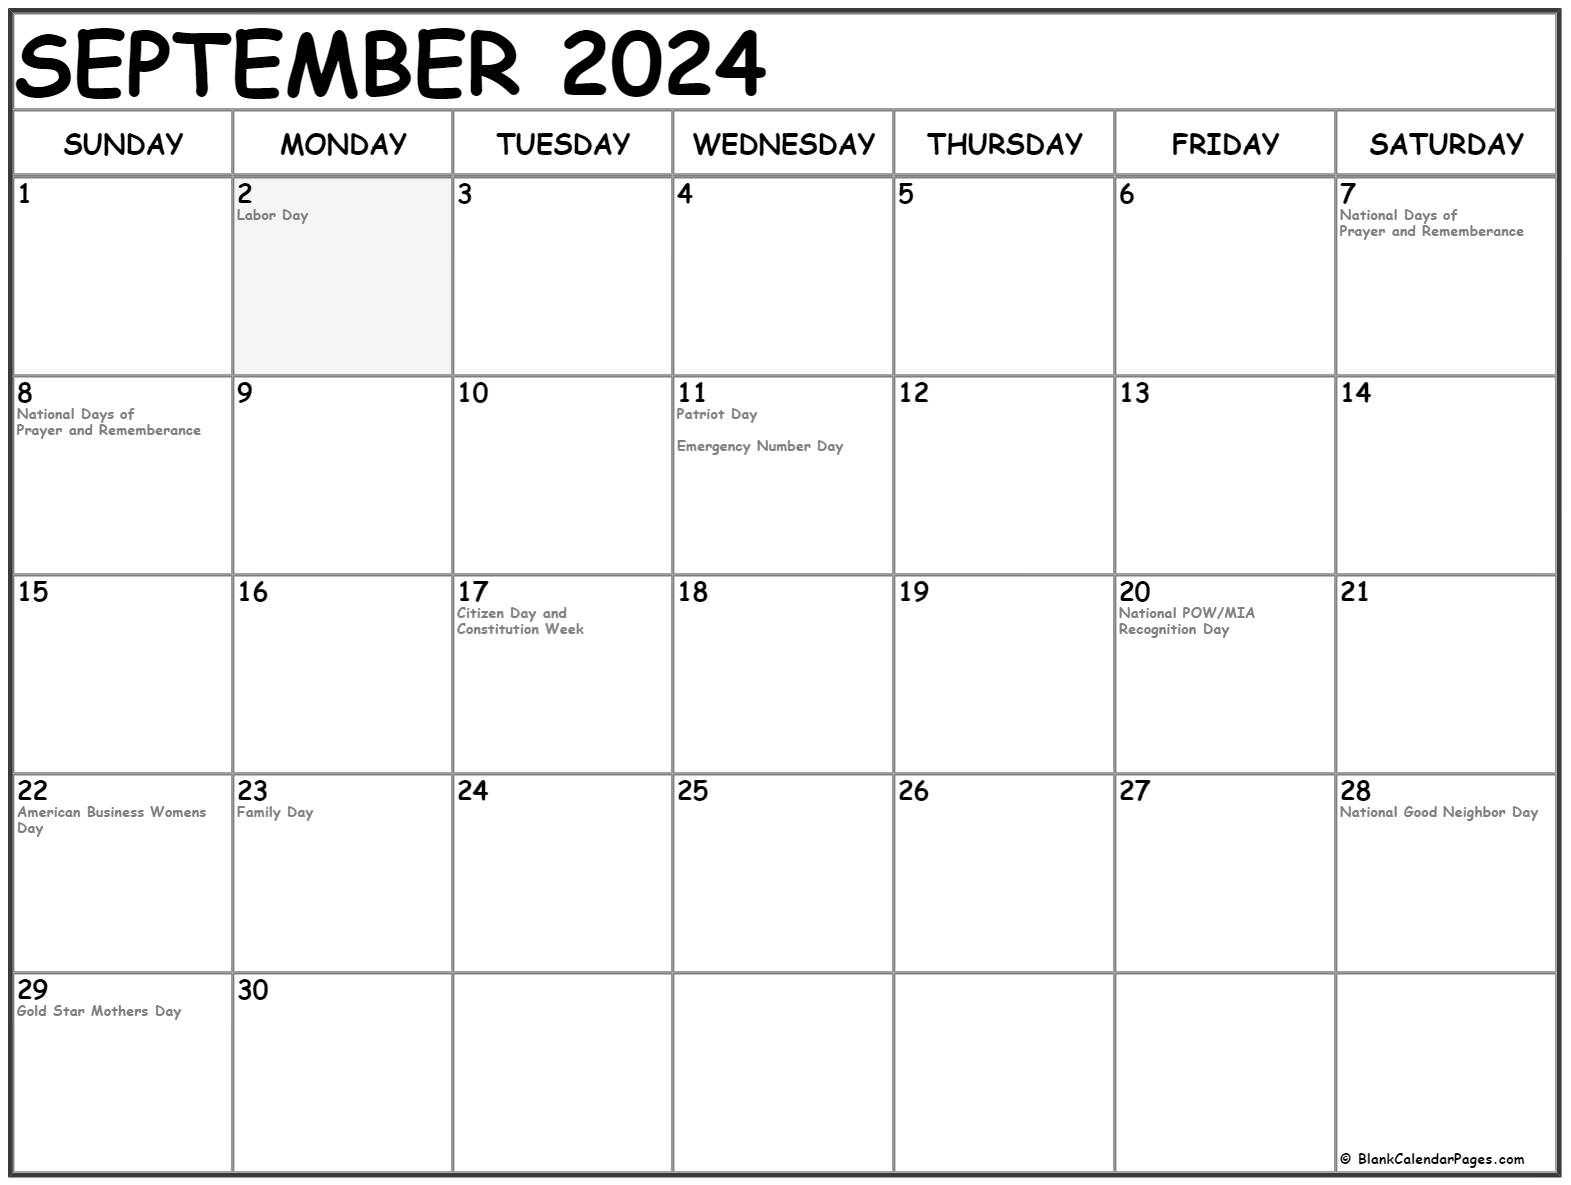 september 2021 calendar with holidays usa September 2021 Calendar With Holidays september 2021 calendar with holidays usa